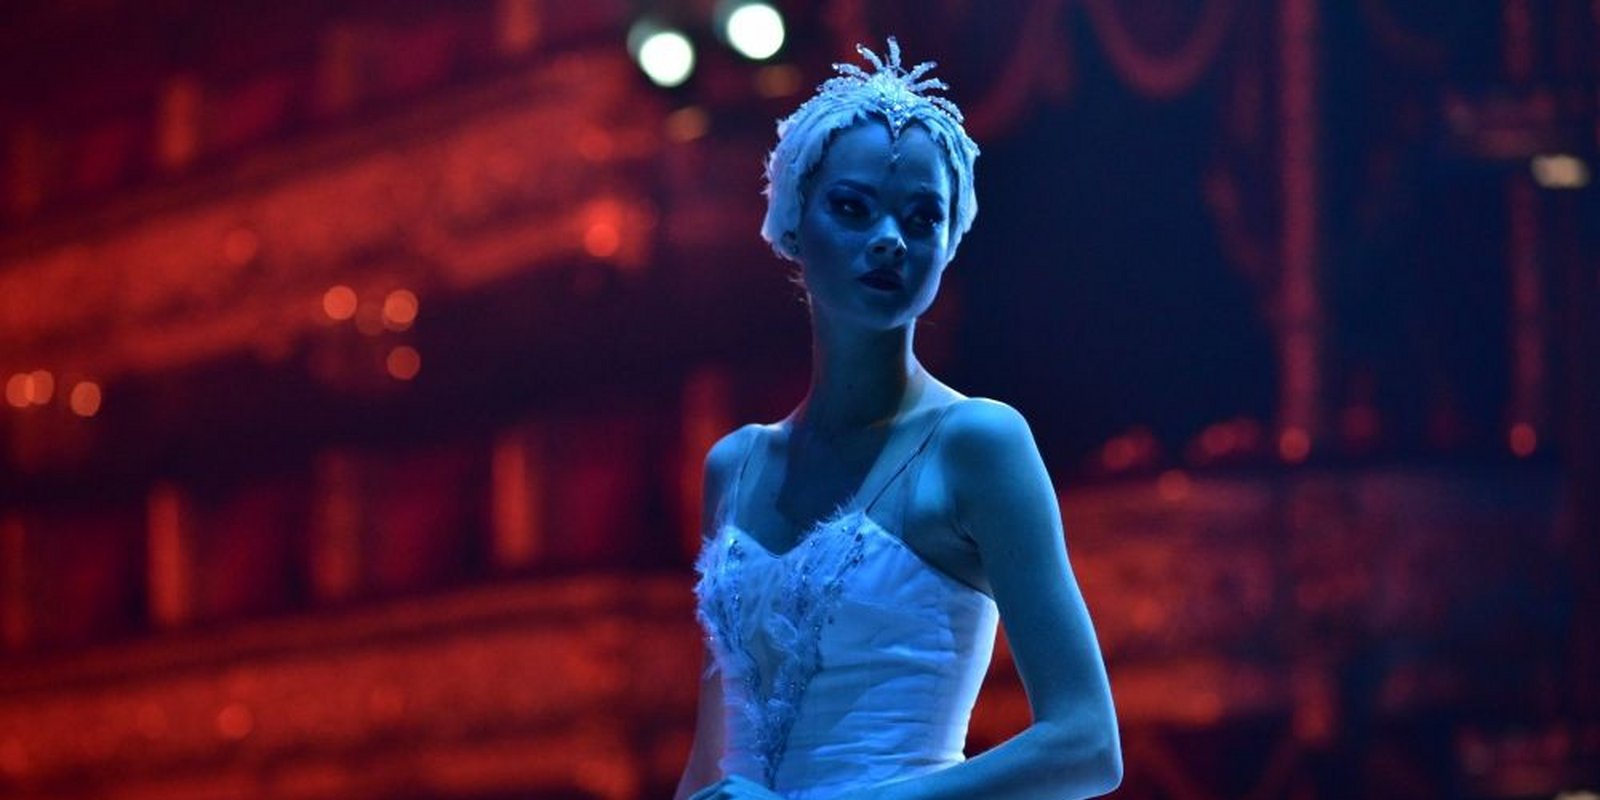 Ballerina - Ihr Traum vom Bolshoi